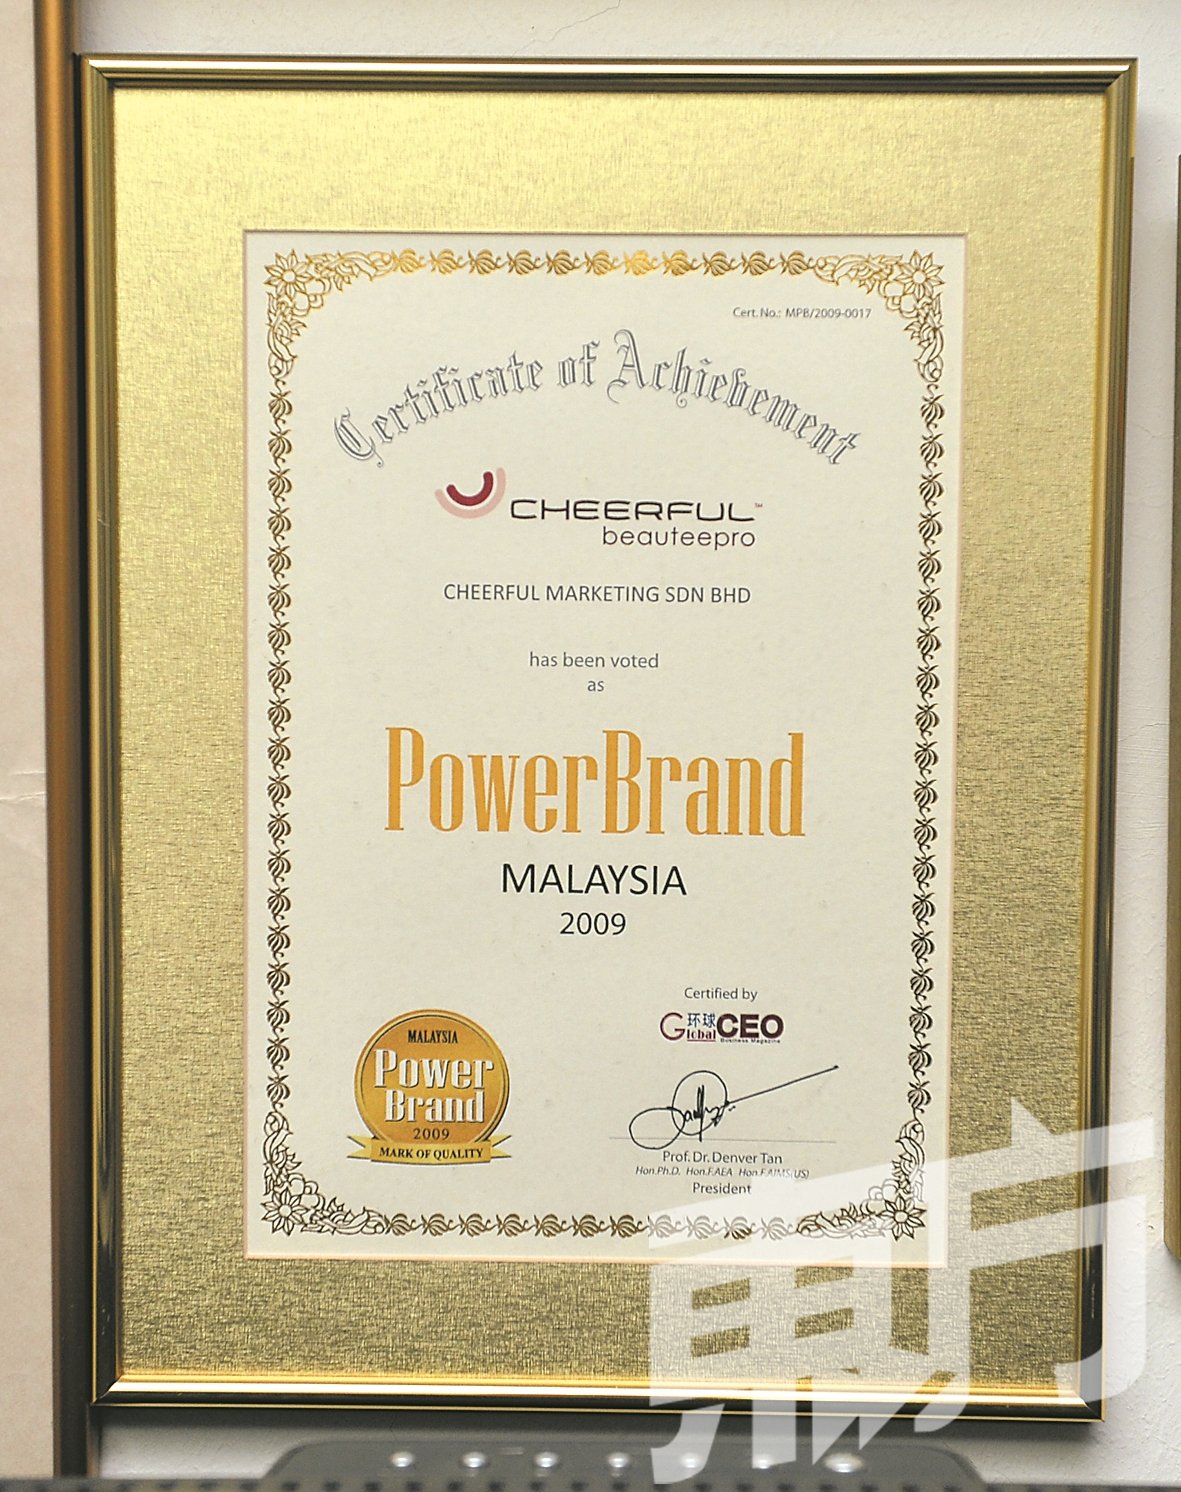 企富贸易机构在2009年获颁马来西亚卓越领导品牌奖状。